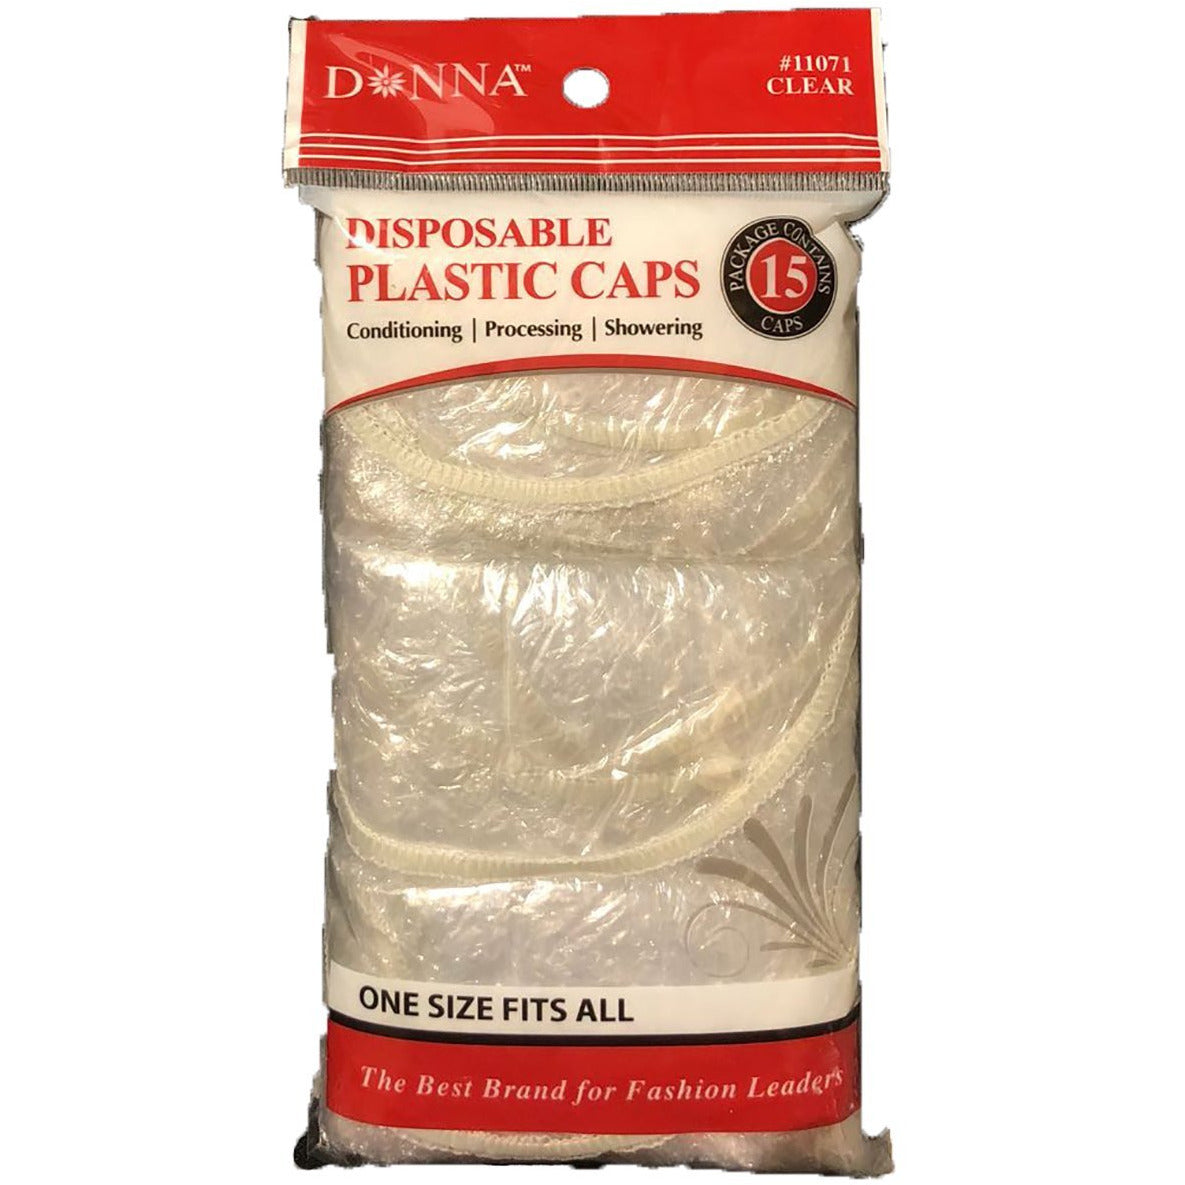 4th Ave Market: Donna Disposable Plastic Caps, 15 pcs